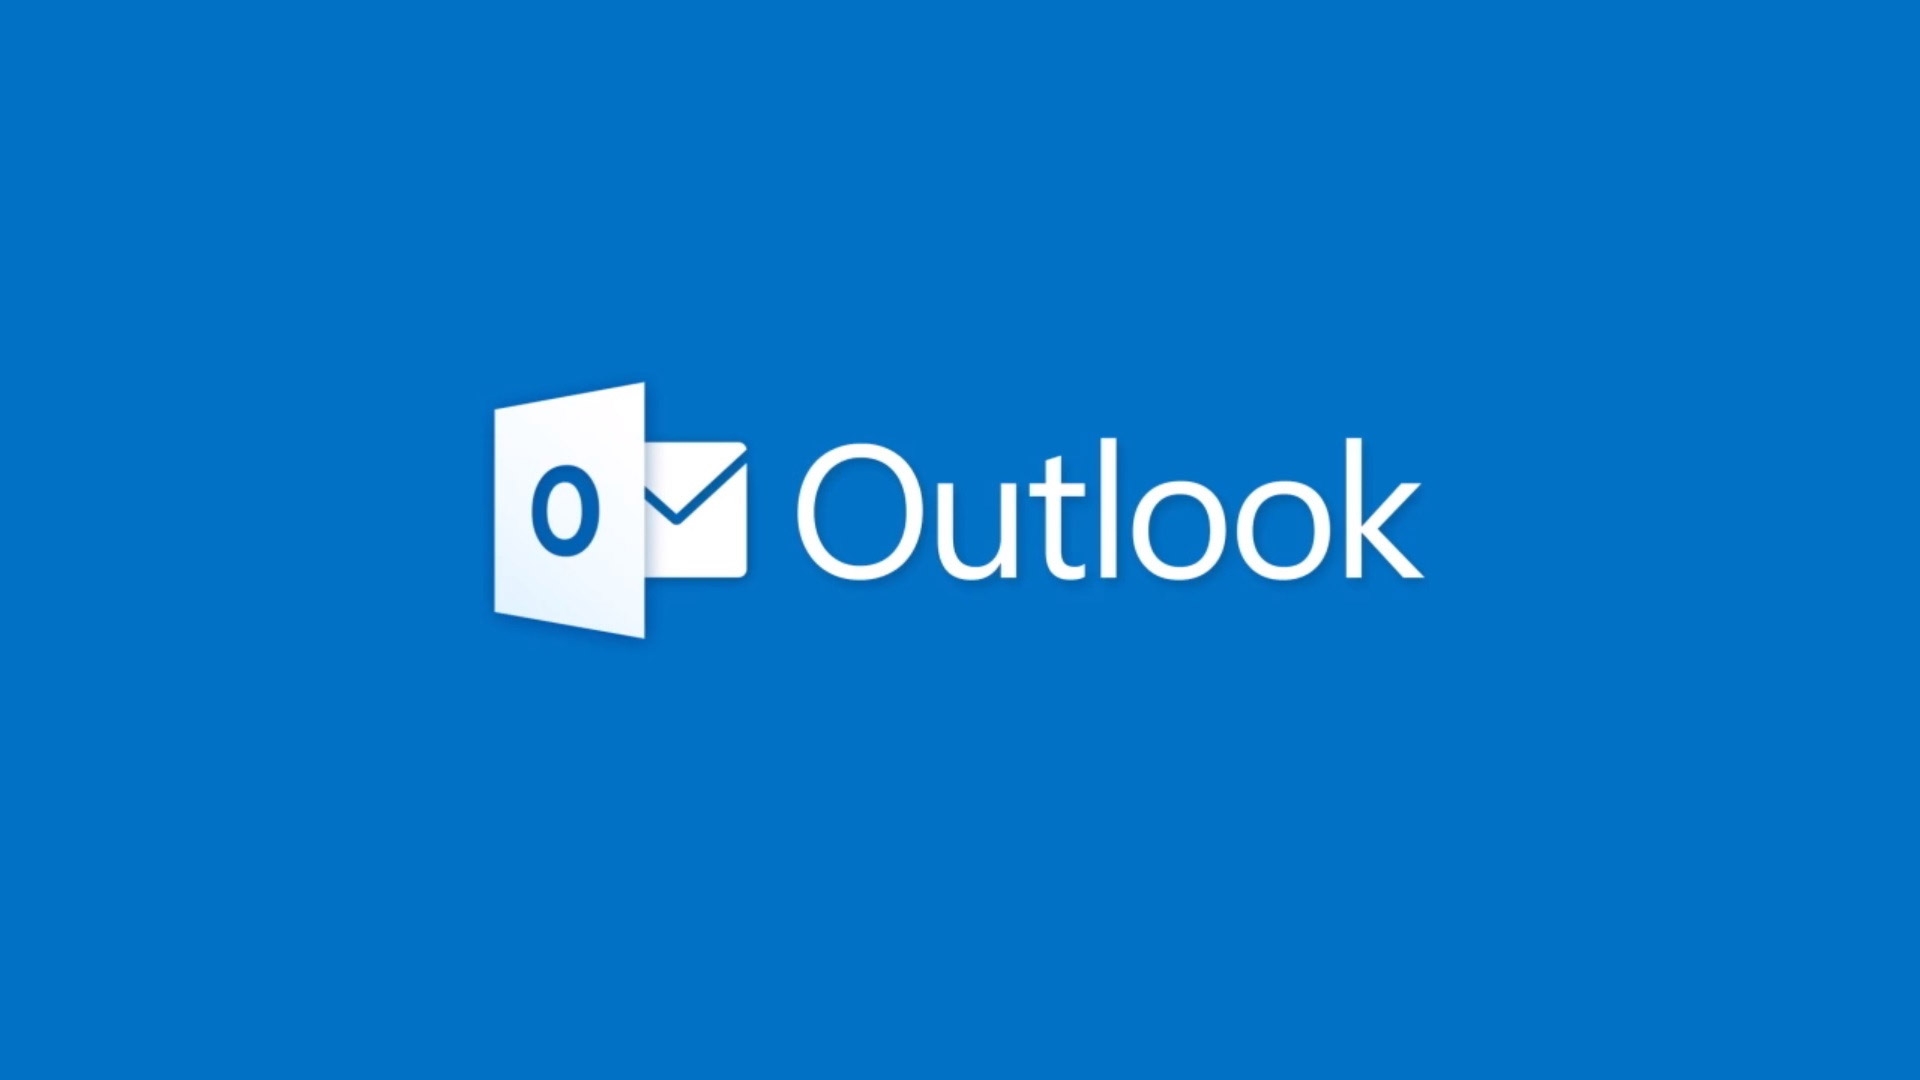 Microsoft Outlook ไม่สามารถเปิดอ่านอีเมลที่มีตารางได้